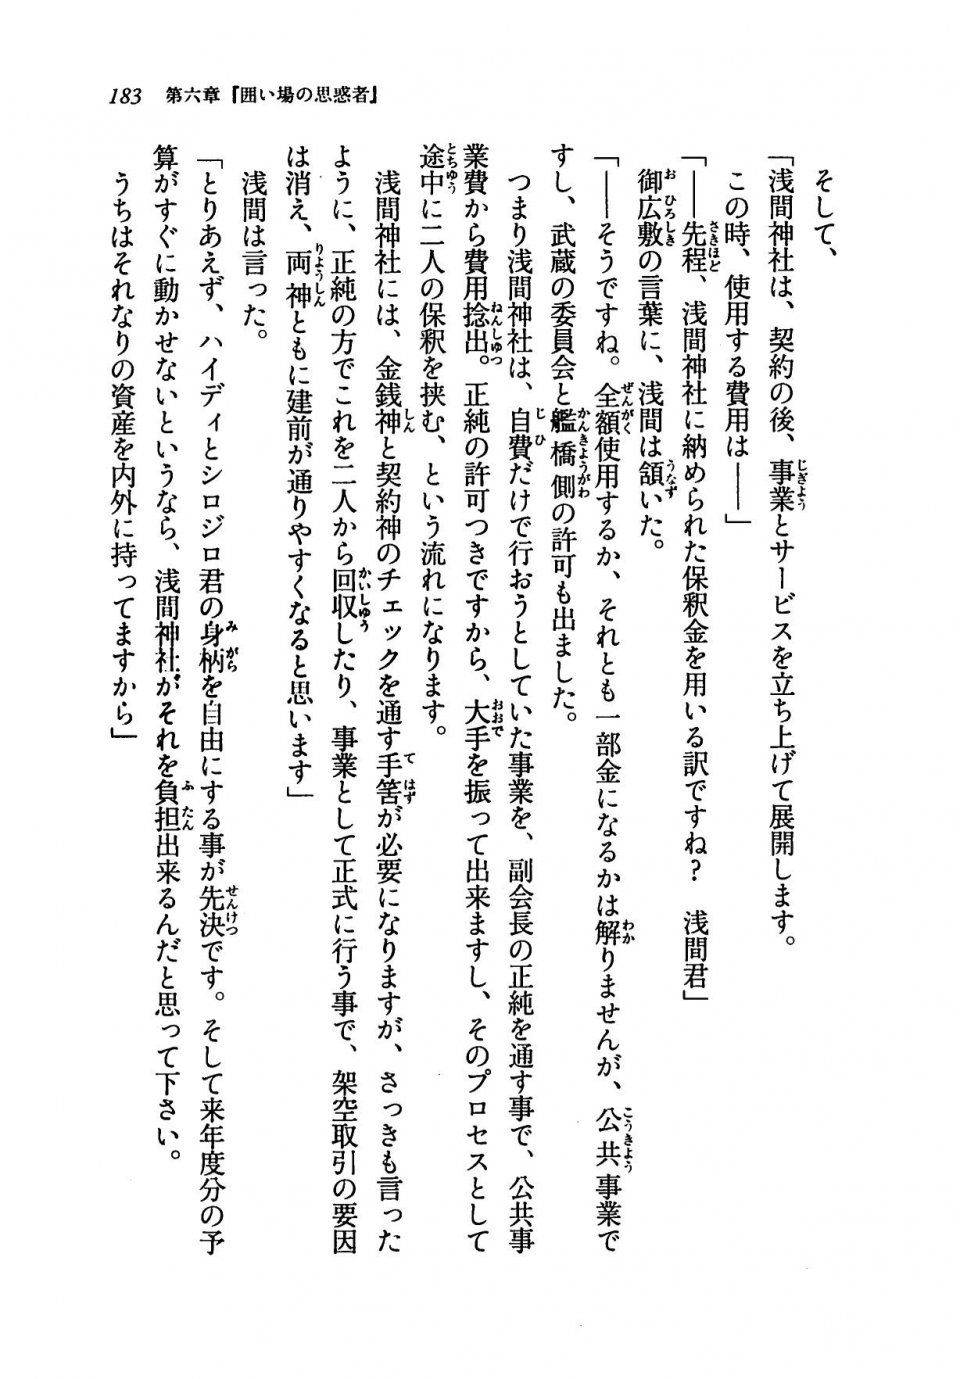 Kyoukai Senjou no Horizon LN Vol 19(8A) - Photo #183